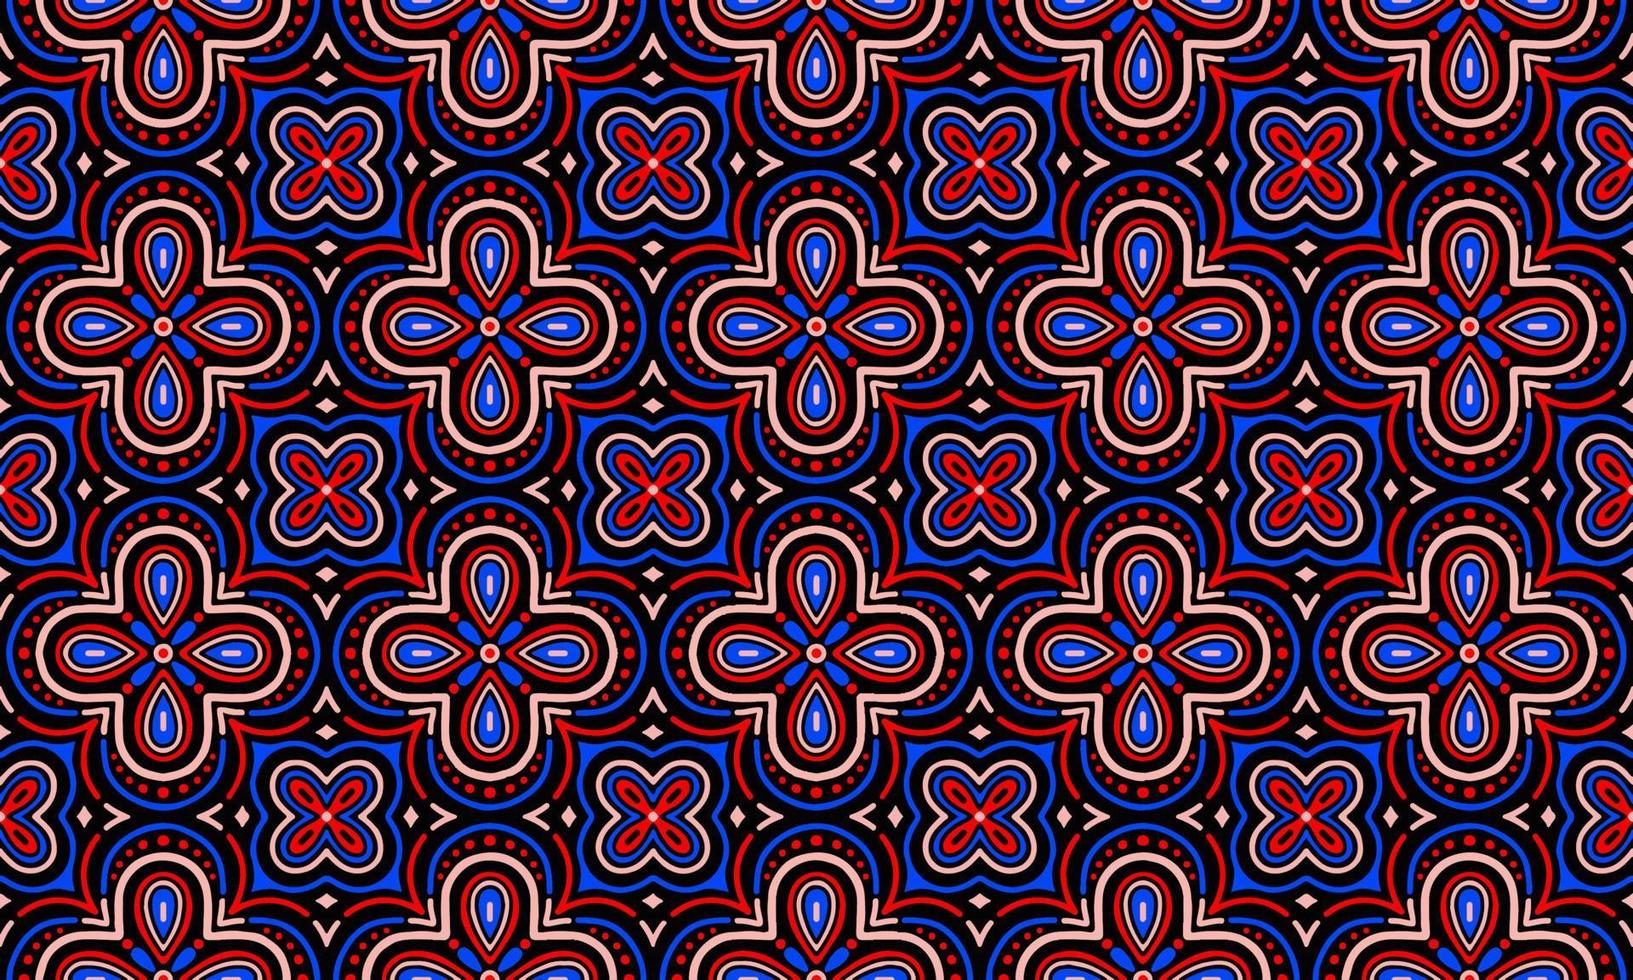 fundo étnico abstrato bonito vermelho azul preto flor geométrico motivo popular tribal árabe oriental padrão nativo design tradicional papel de parede do tapete roupas tecido embrulho impressão vetor popular batik